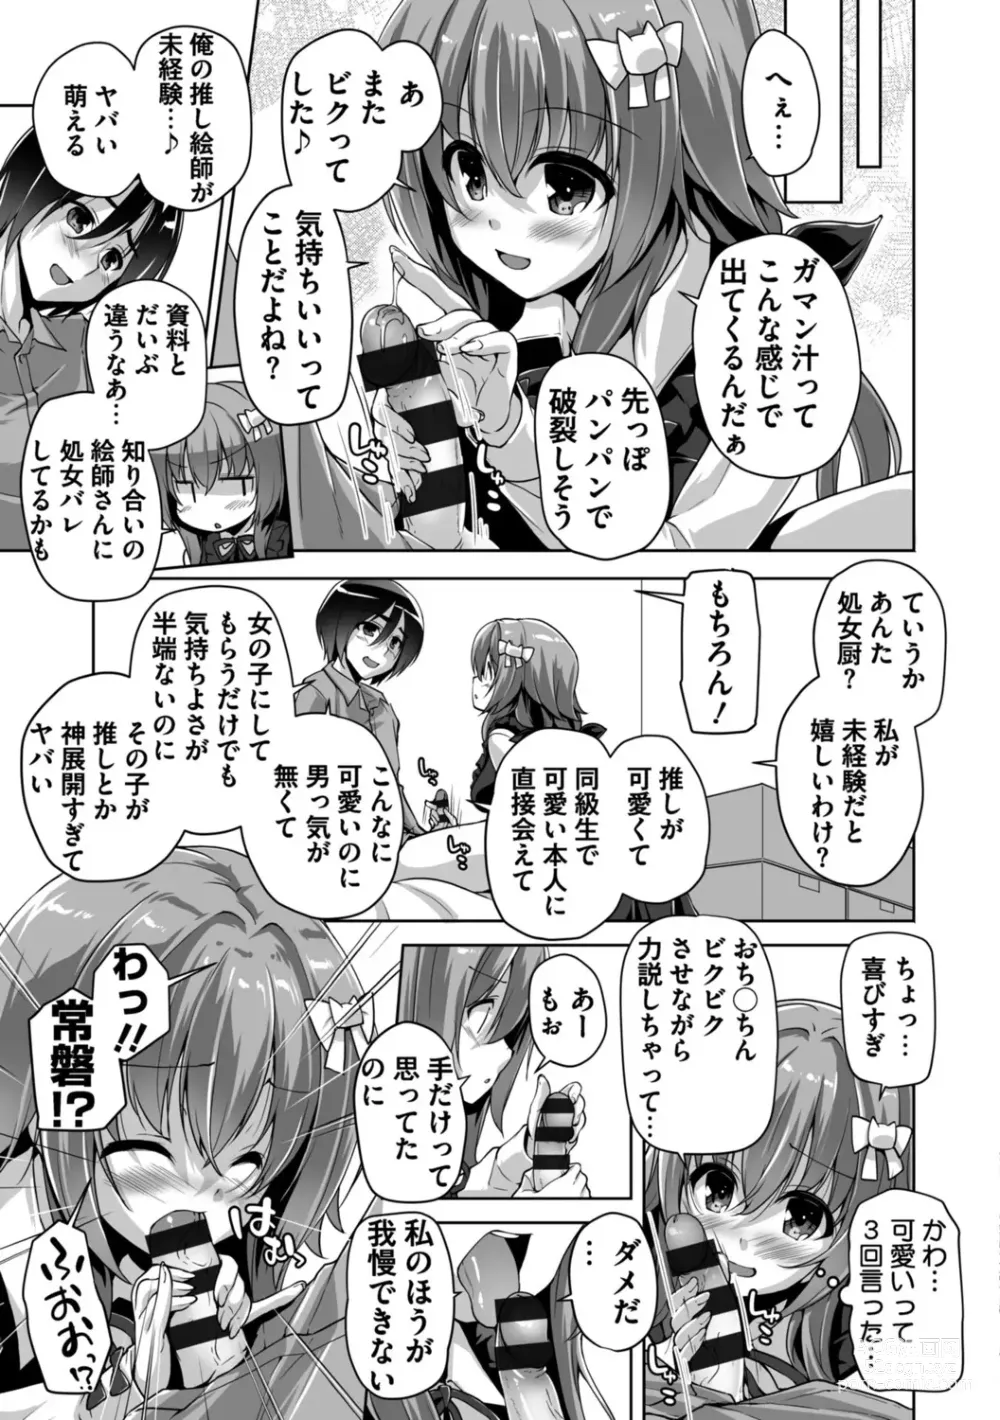 Page 9 of manga Hamidashi Creative Adult Edition